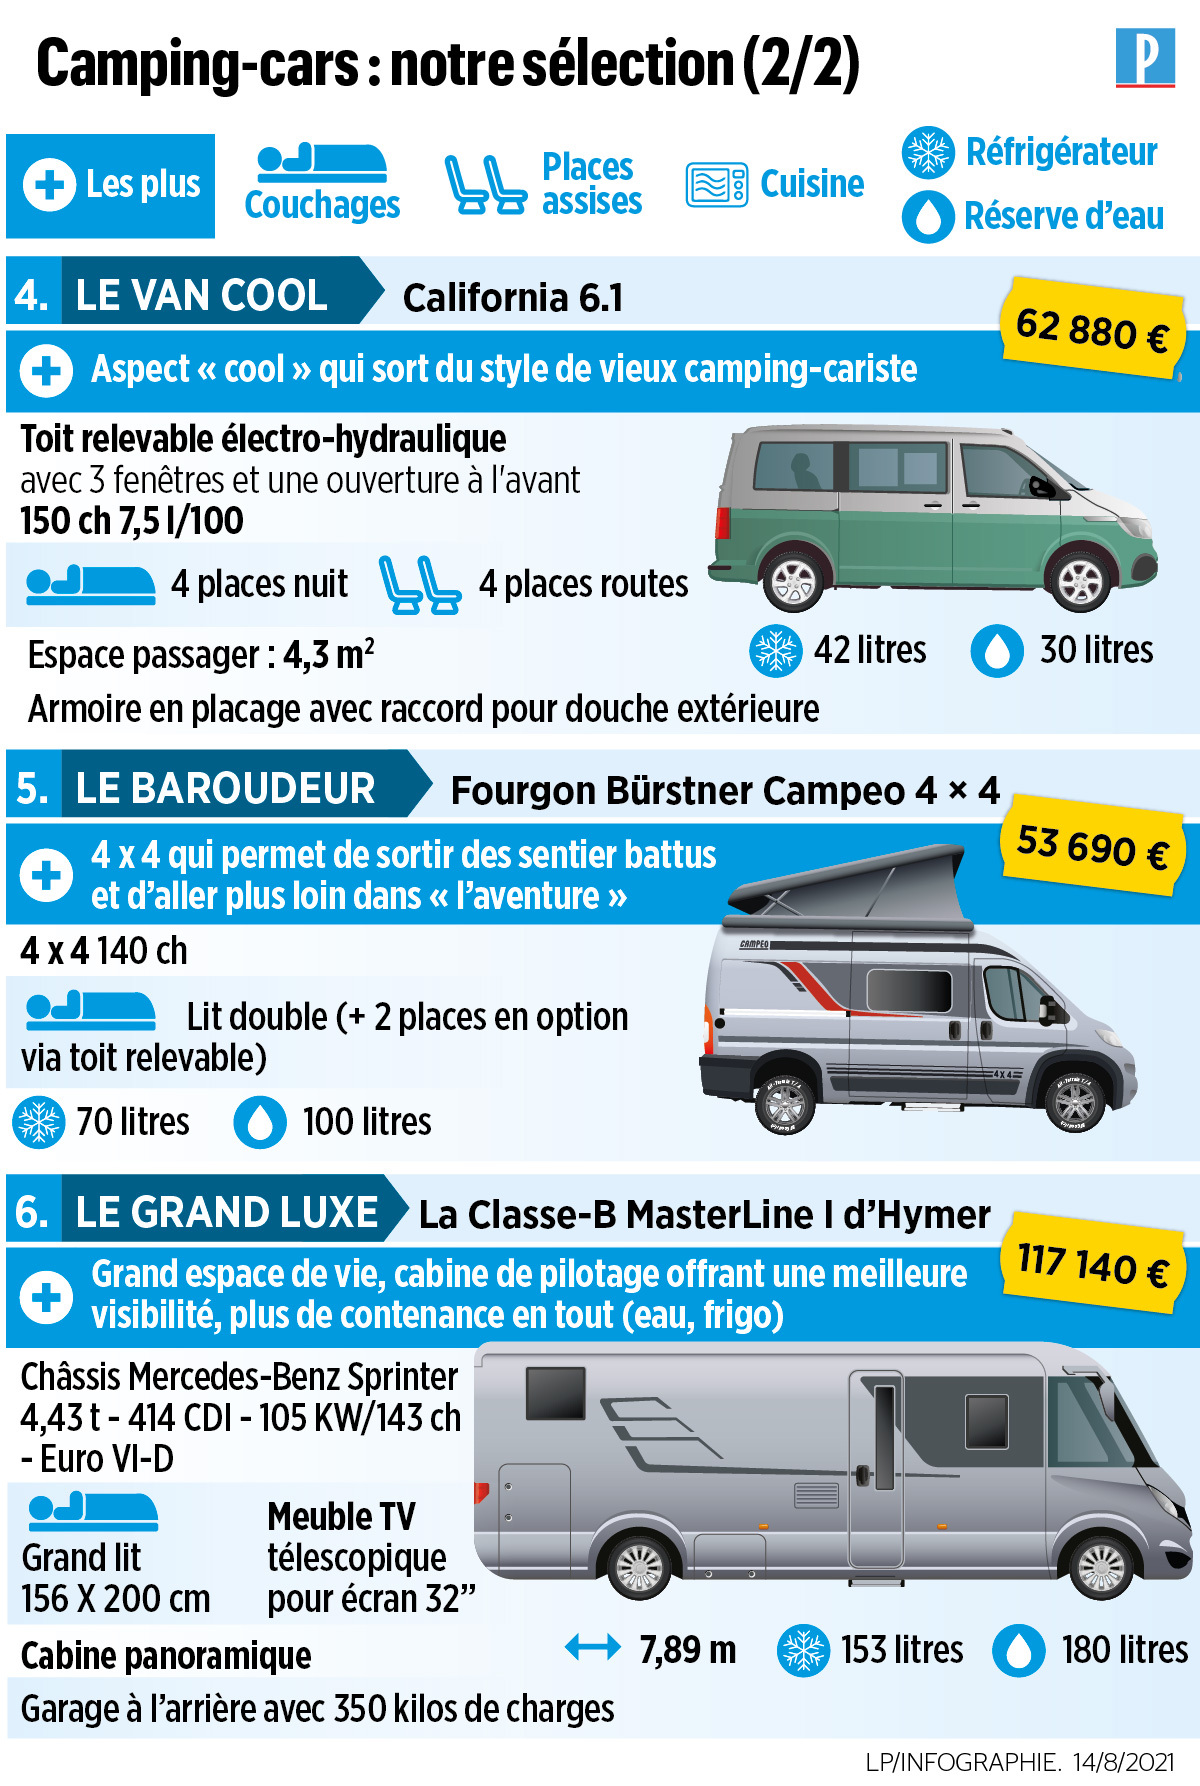 La crise sanitaire dope le marché du camping-car en Europe